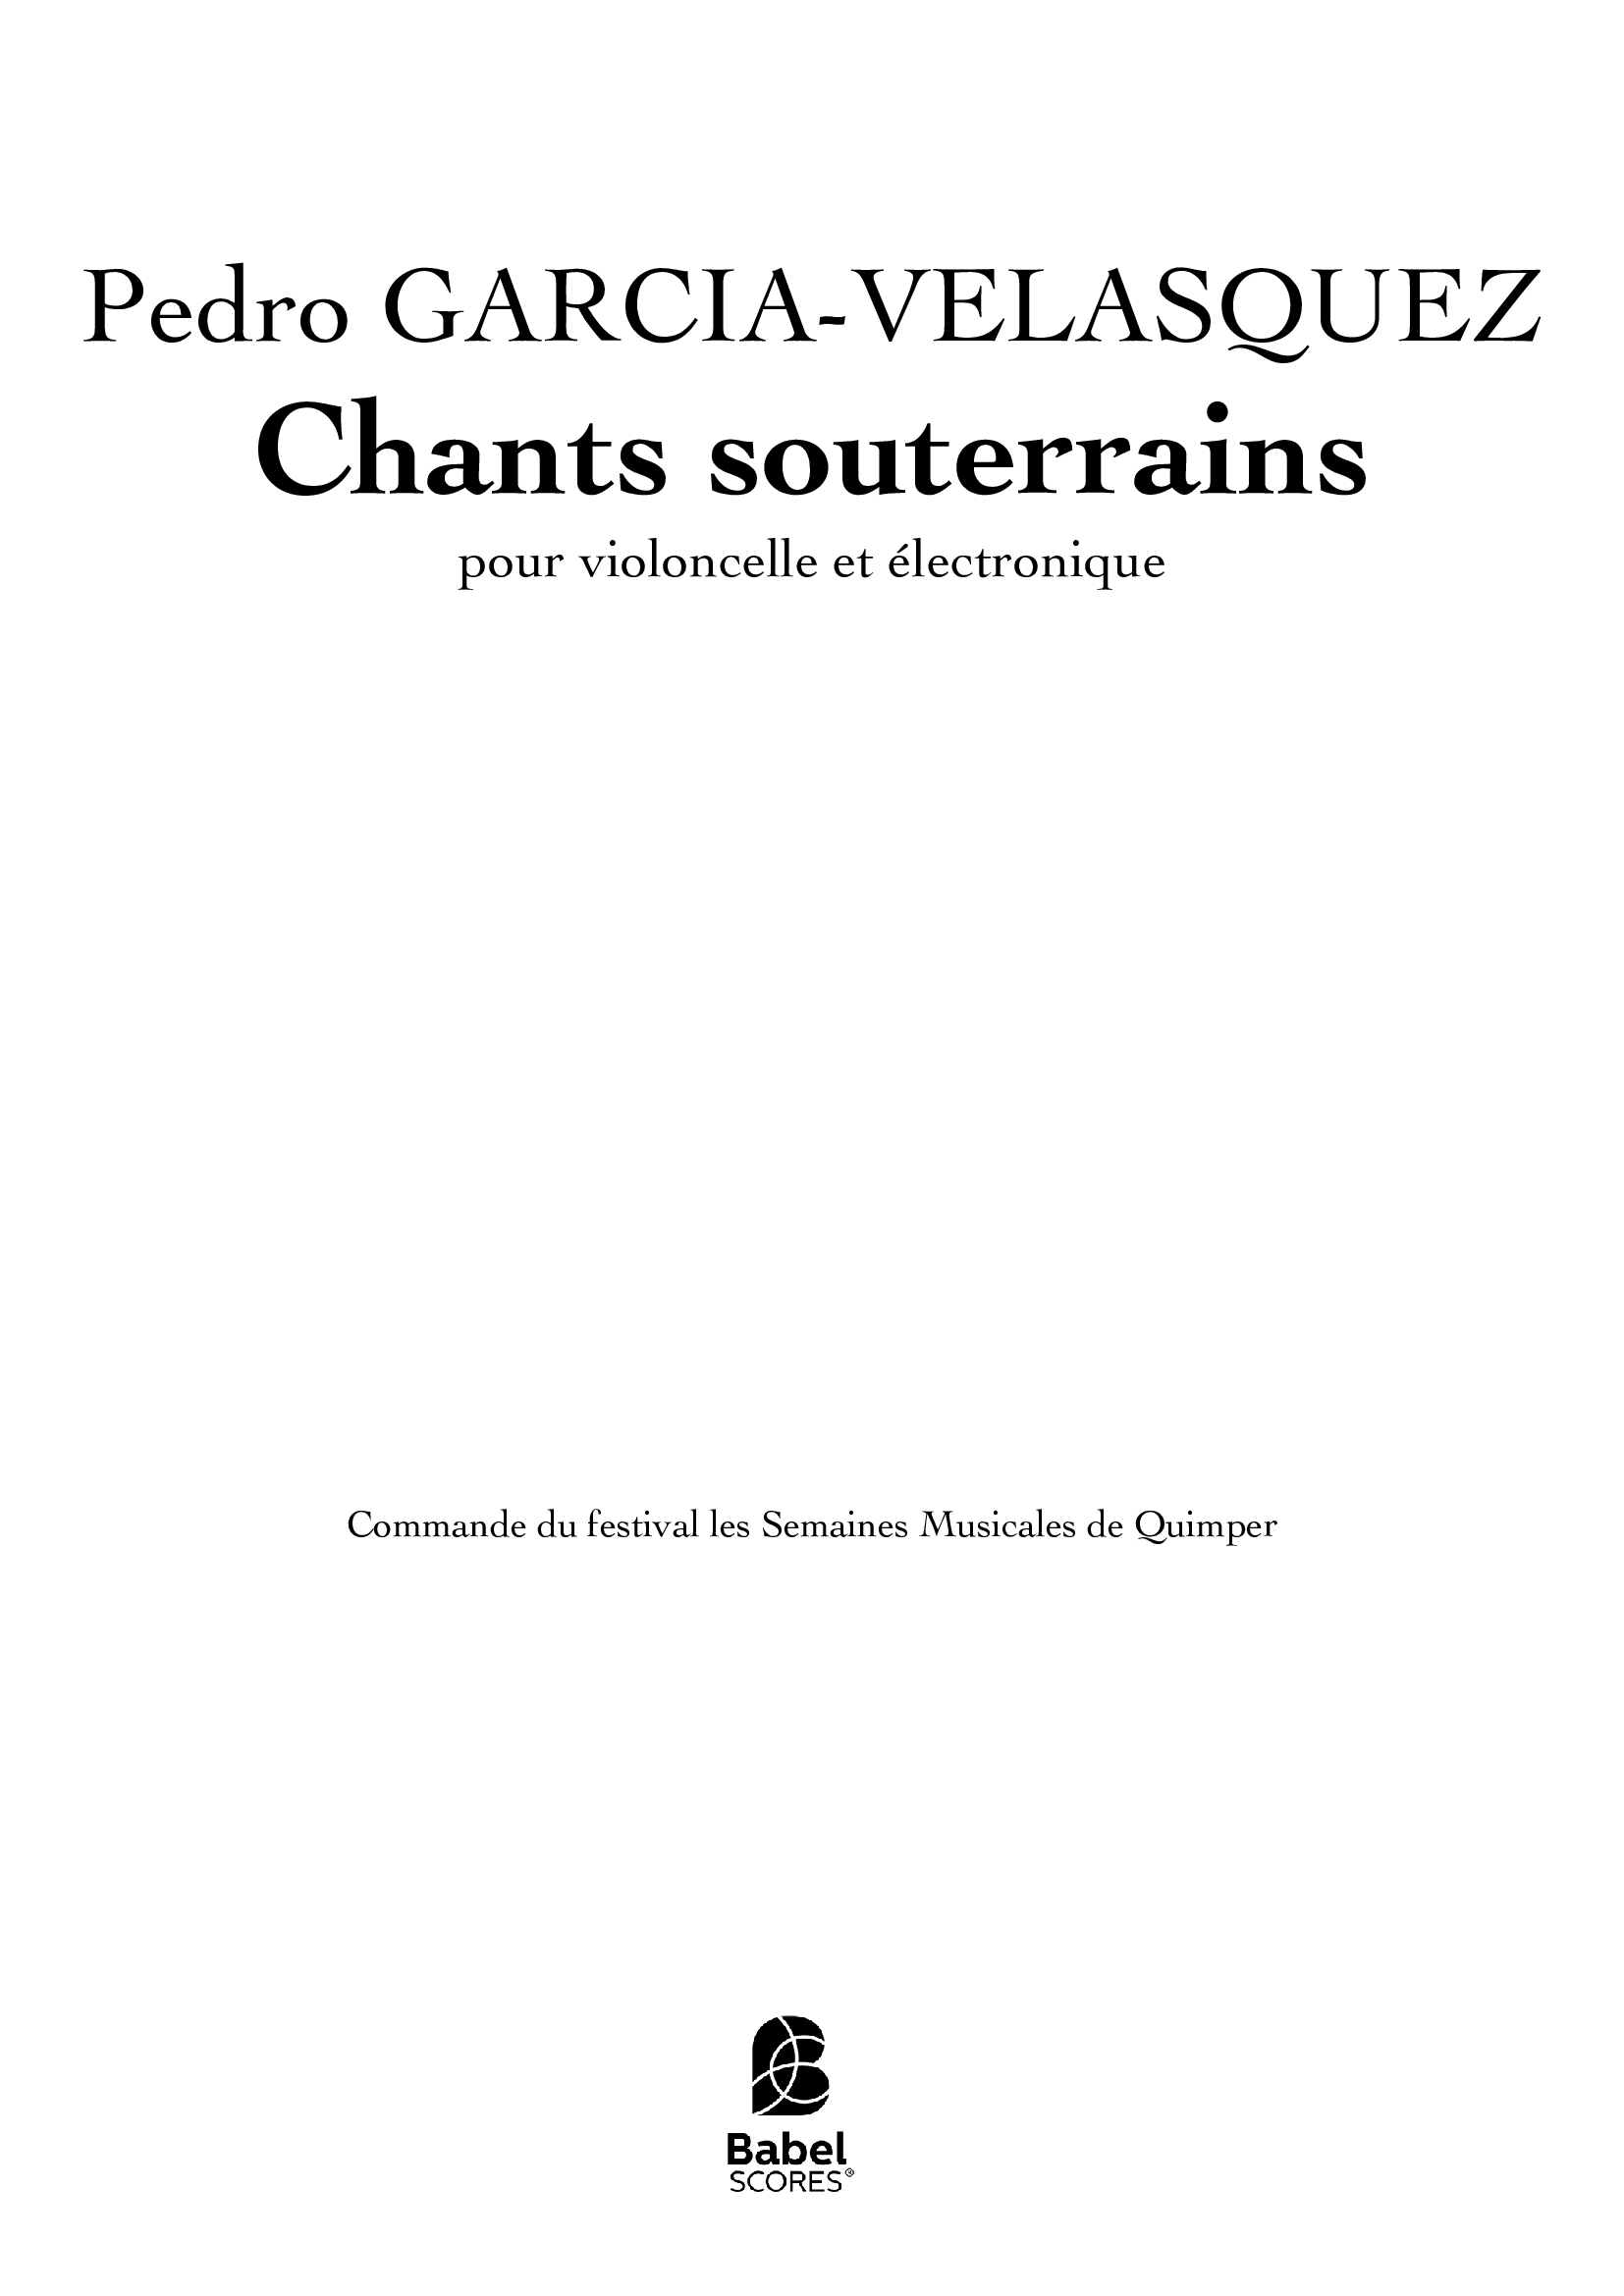 ChantsSouterrains1_v1 29 aout 1